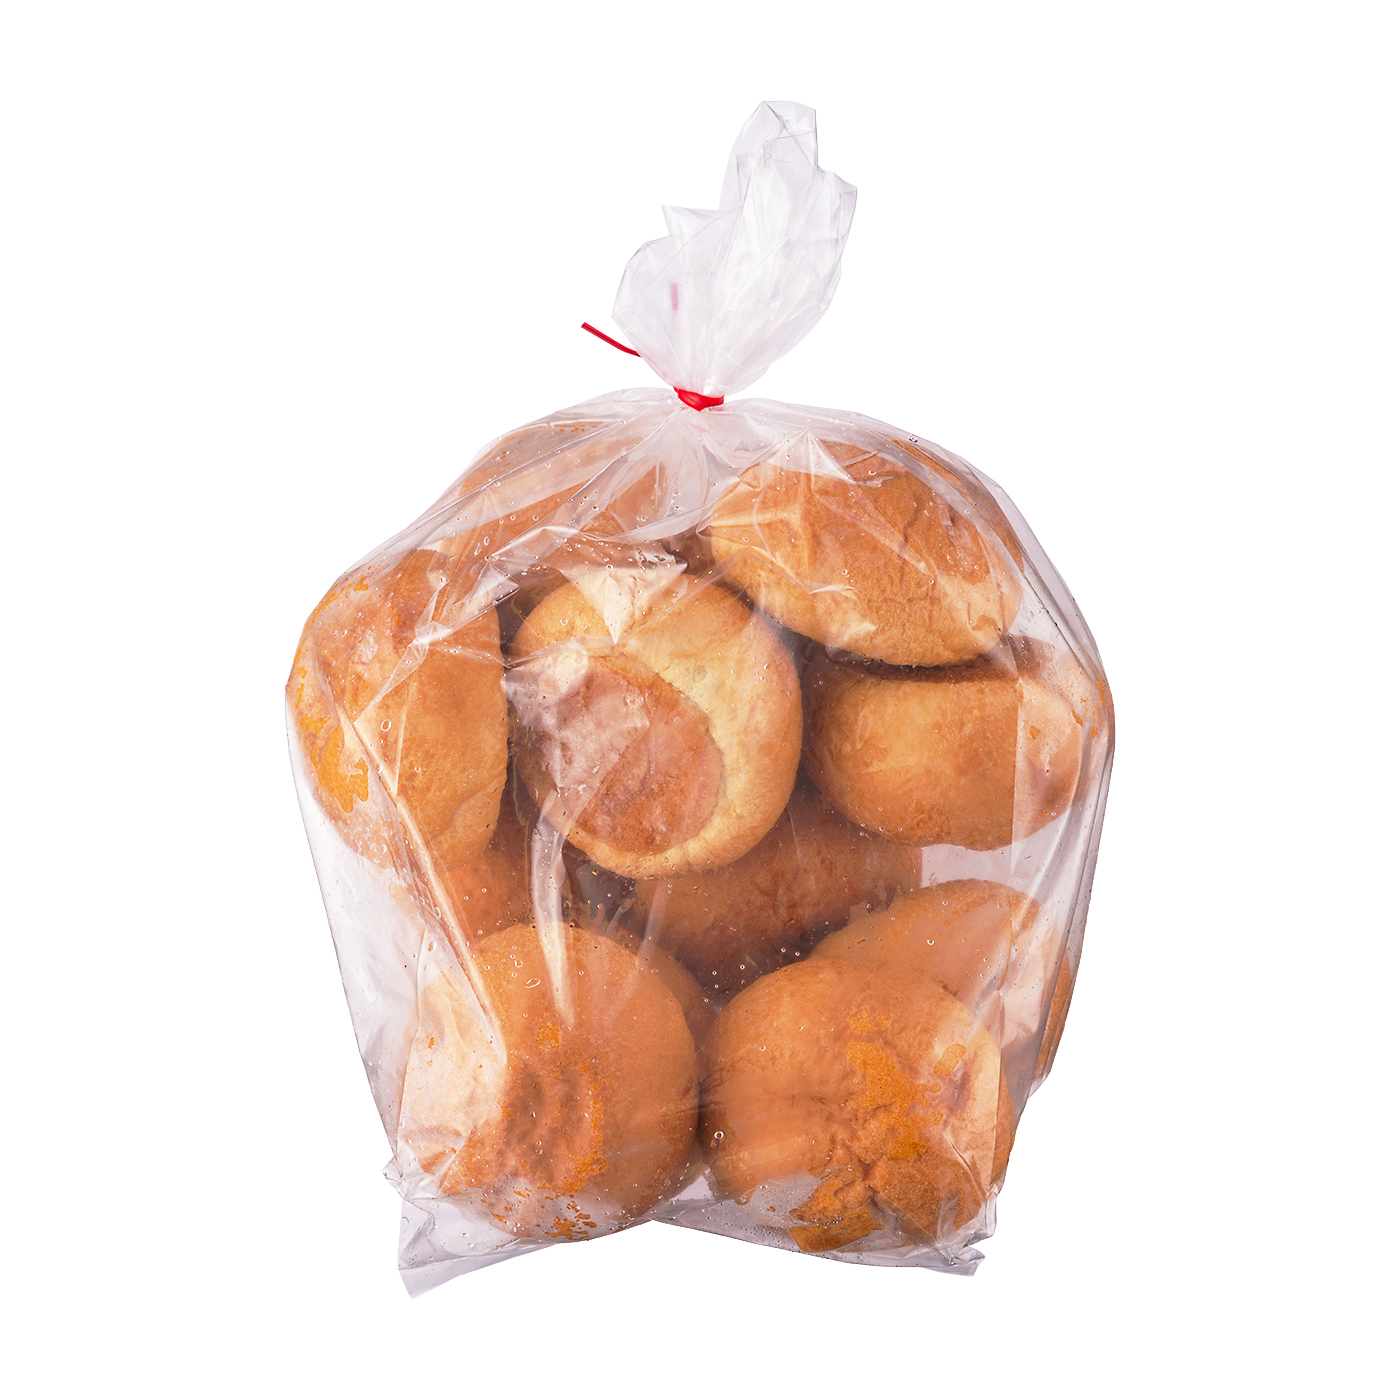  糖質制限プレミアムバターロール (5個入×4袋)  糖質オフ 低糖質ダイエット 低GI値 ロカボ 工房 (premium buttered roll)